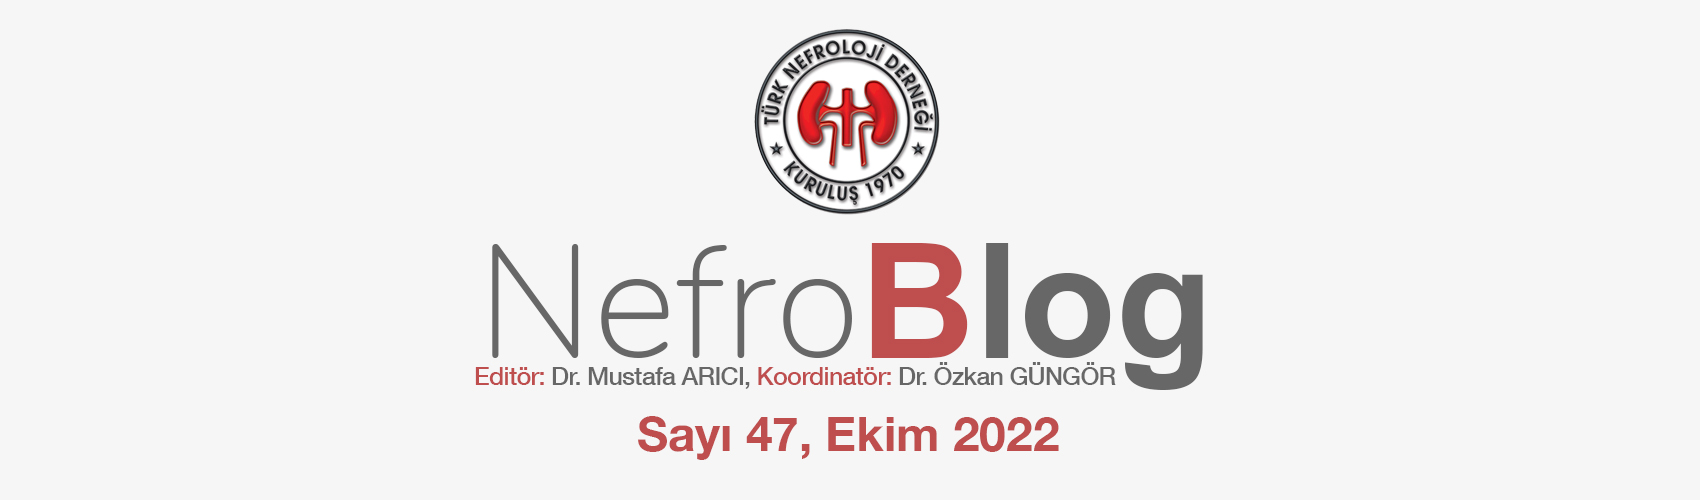 Türk Nefroloji Derneği Slide: Nefroblog 46. Sayısı ile Sizlerle